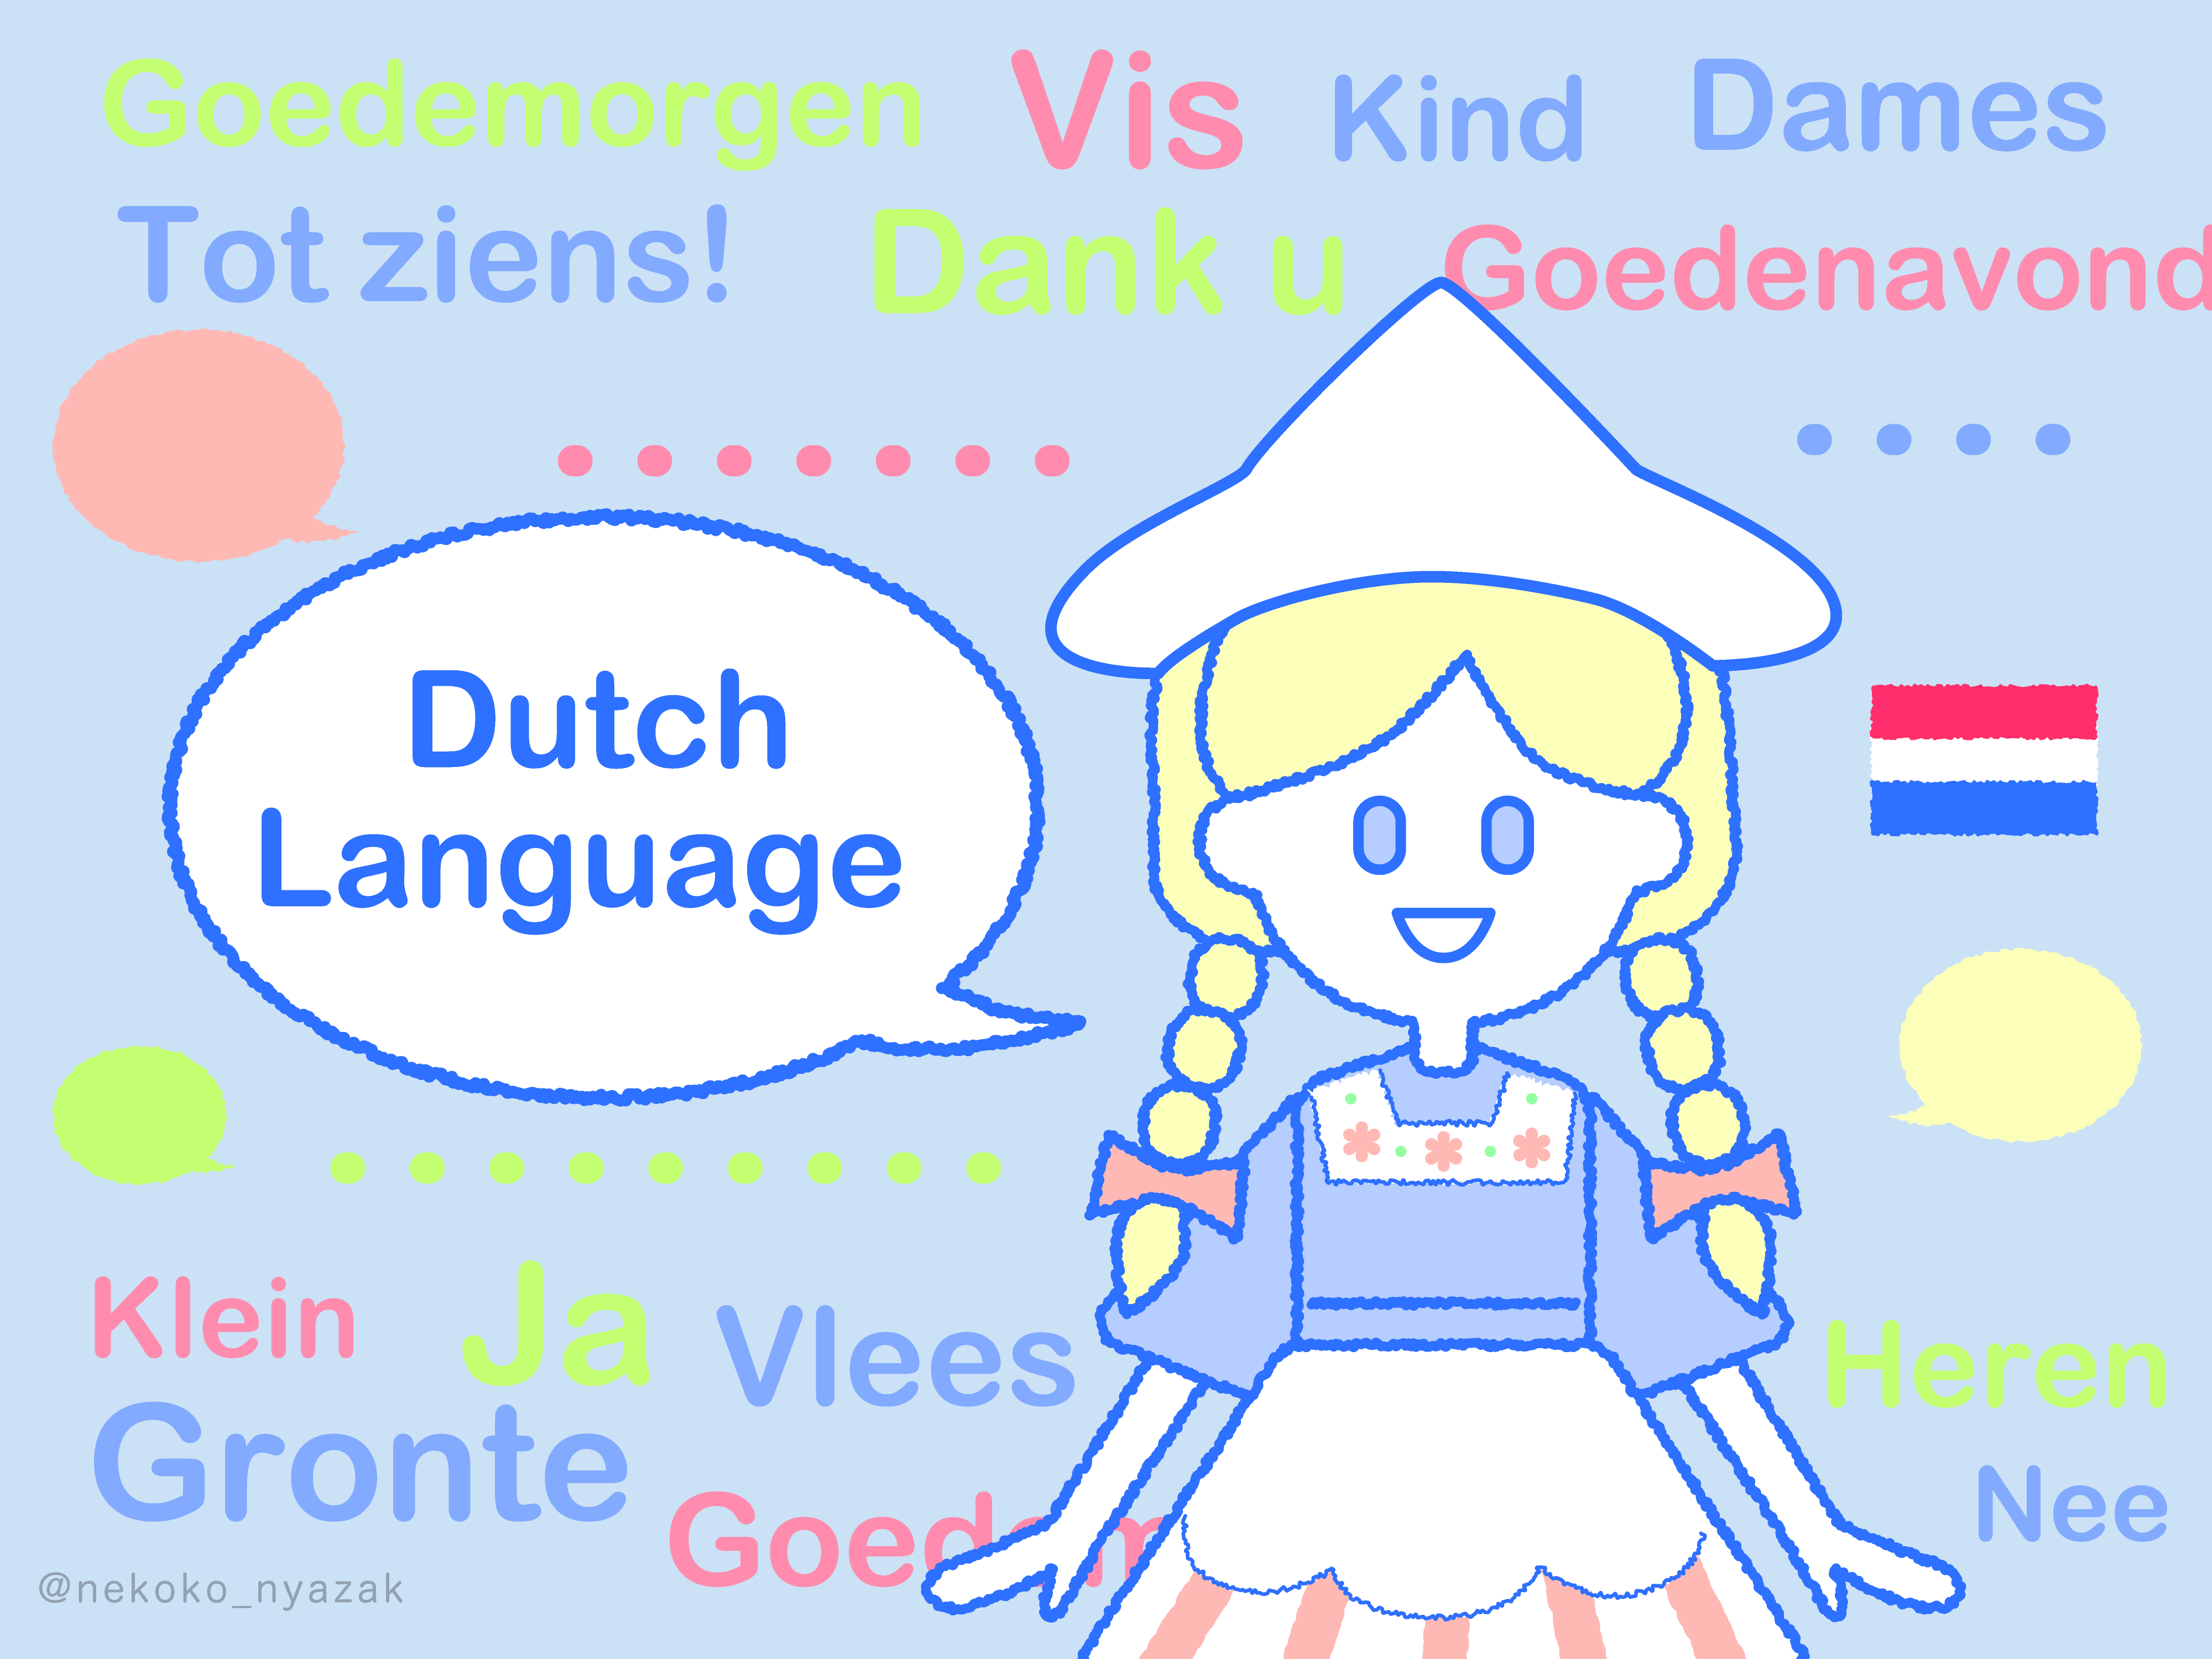 オランダの言語を在住者がイラストで楽しく解説 英語能力が世界一の国